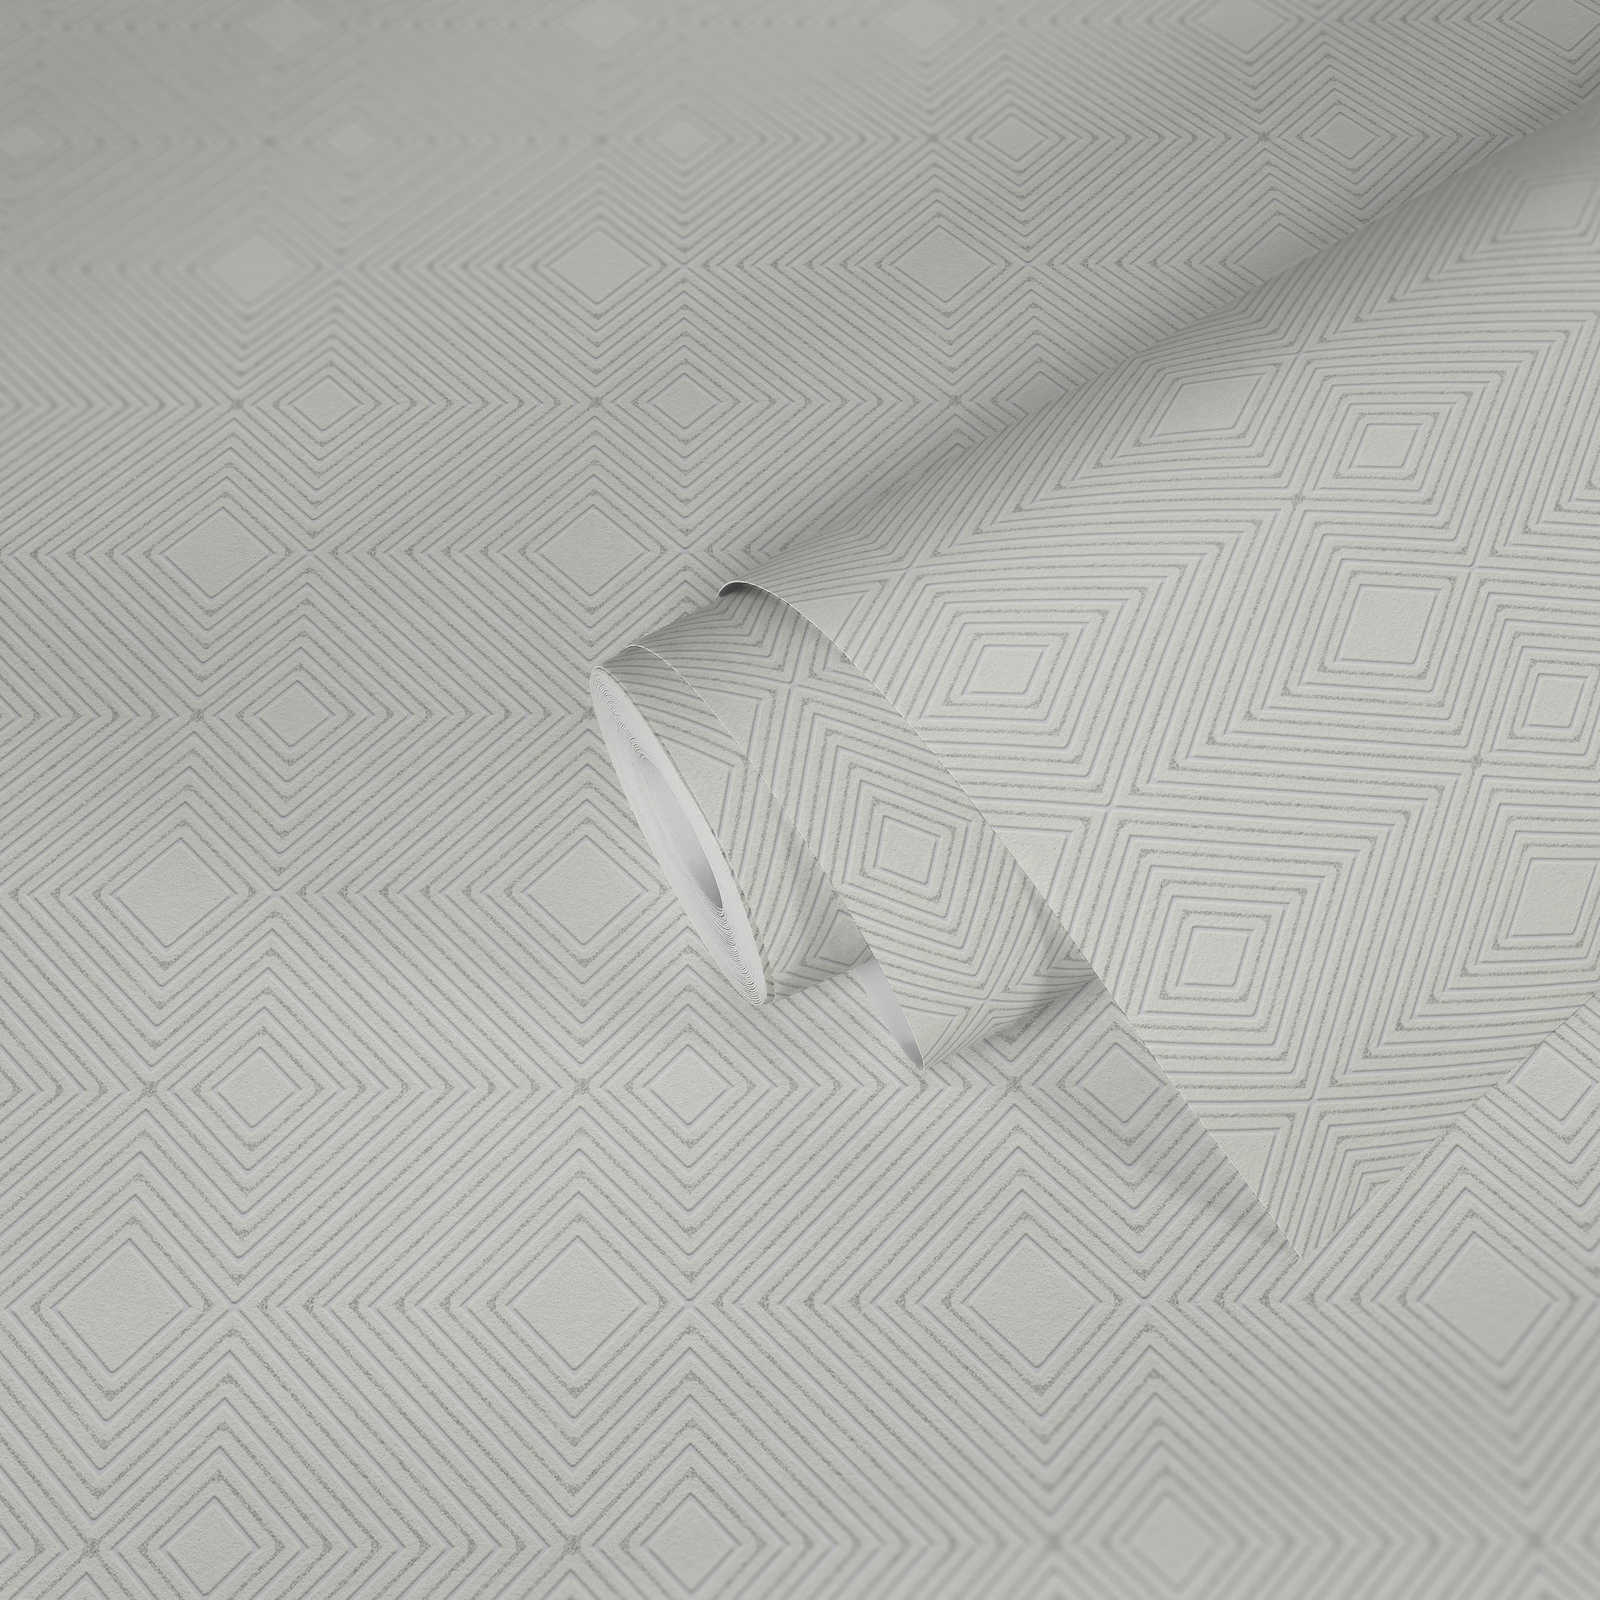             Papier peint à motifs géométriques & effet métallique - blanc
        